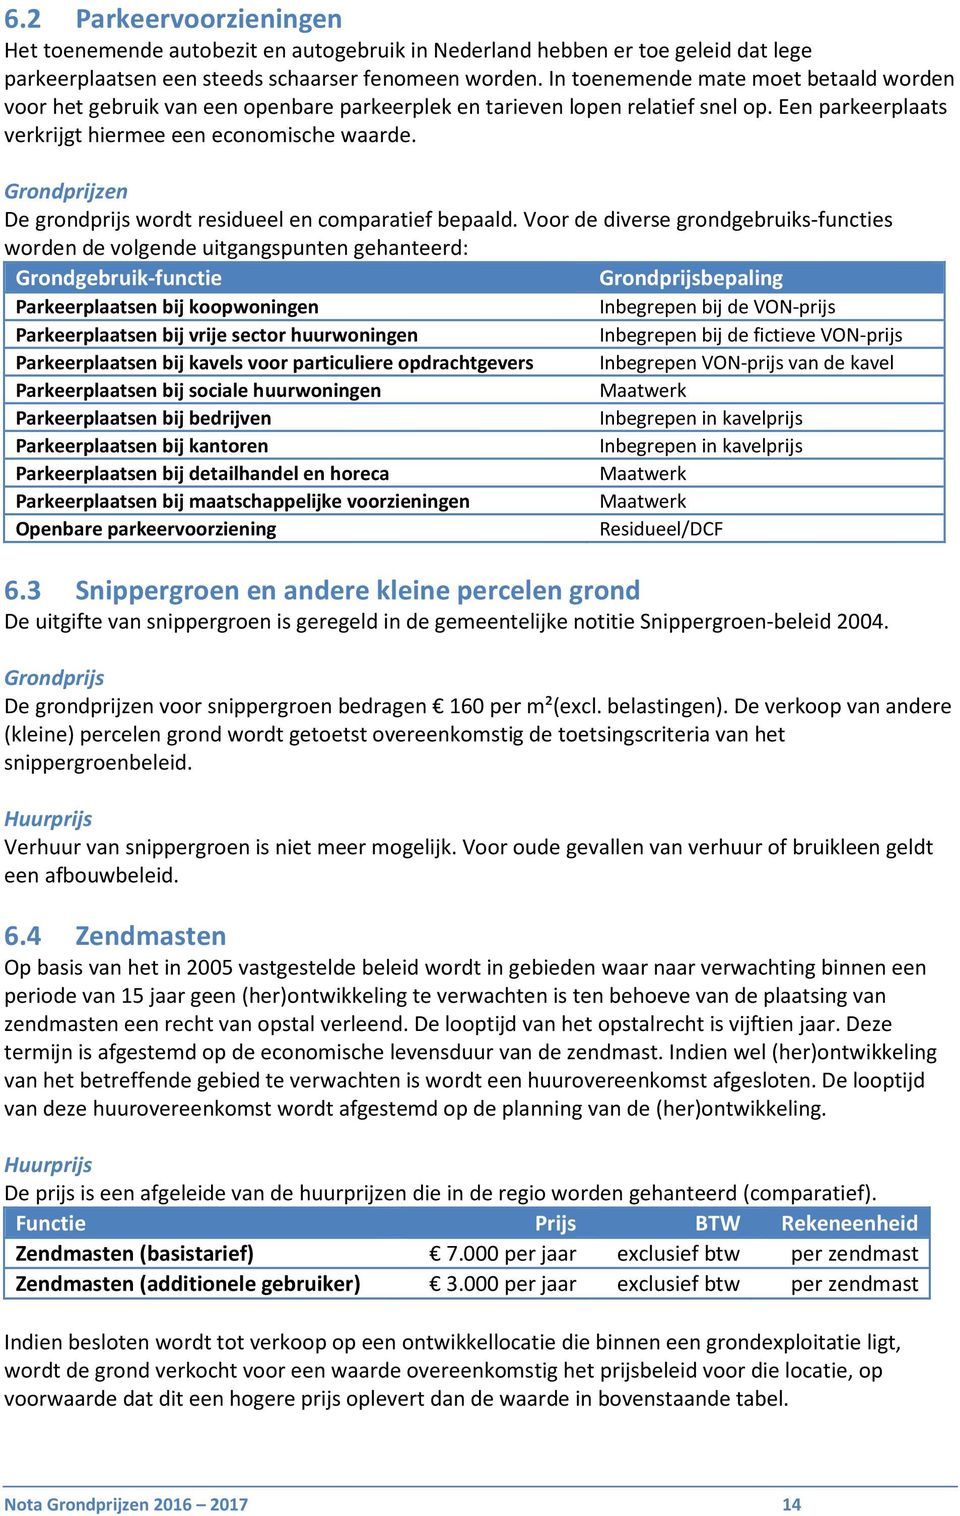 Grondprijzen De grondprijs wordt residueel en comparatief bepaald.